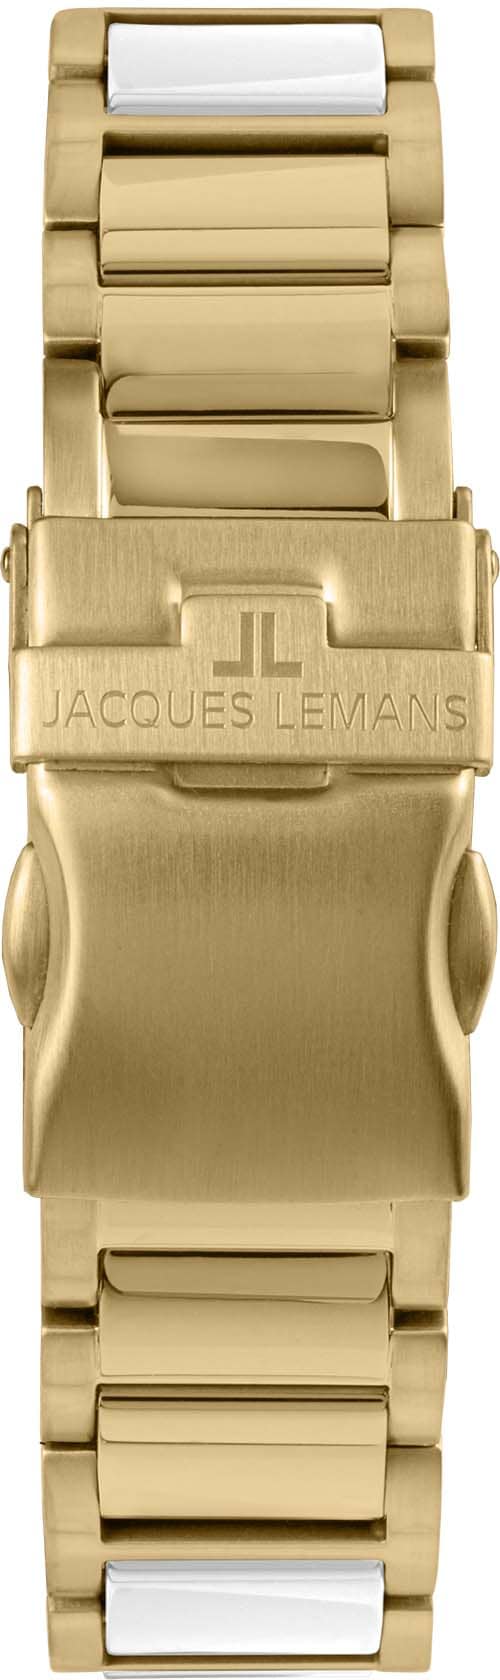 Jacques Lemans Keramikuhr »Liverpool, 42-12L«